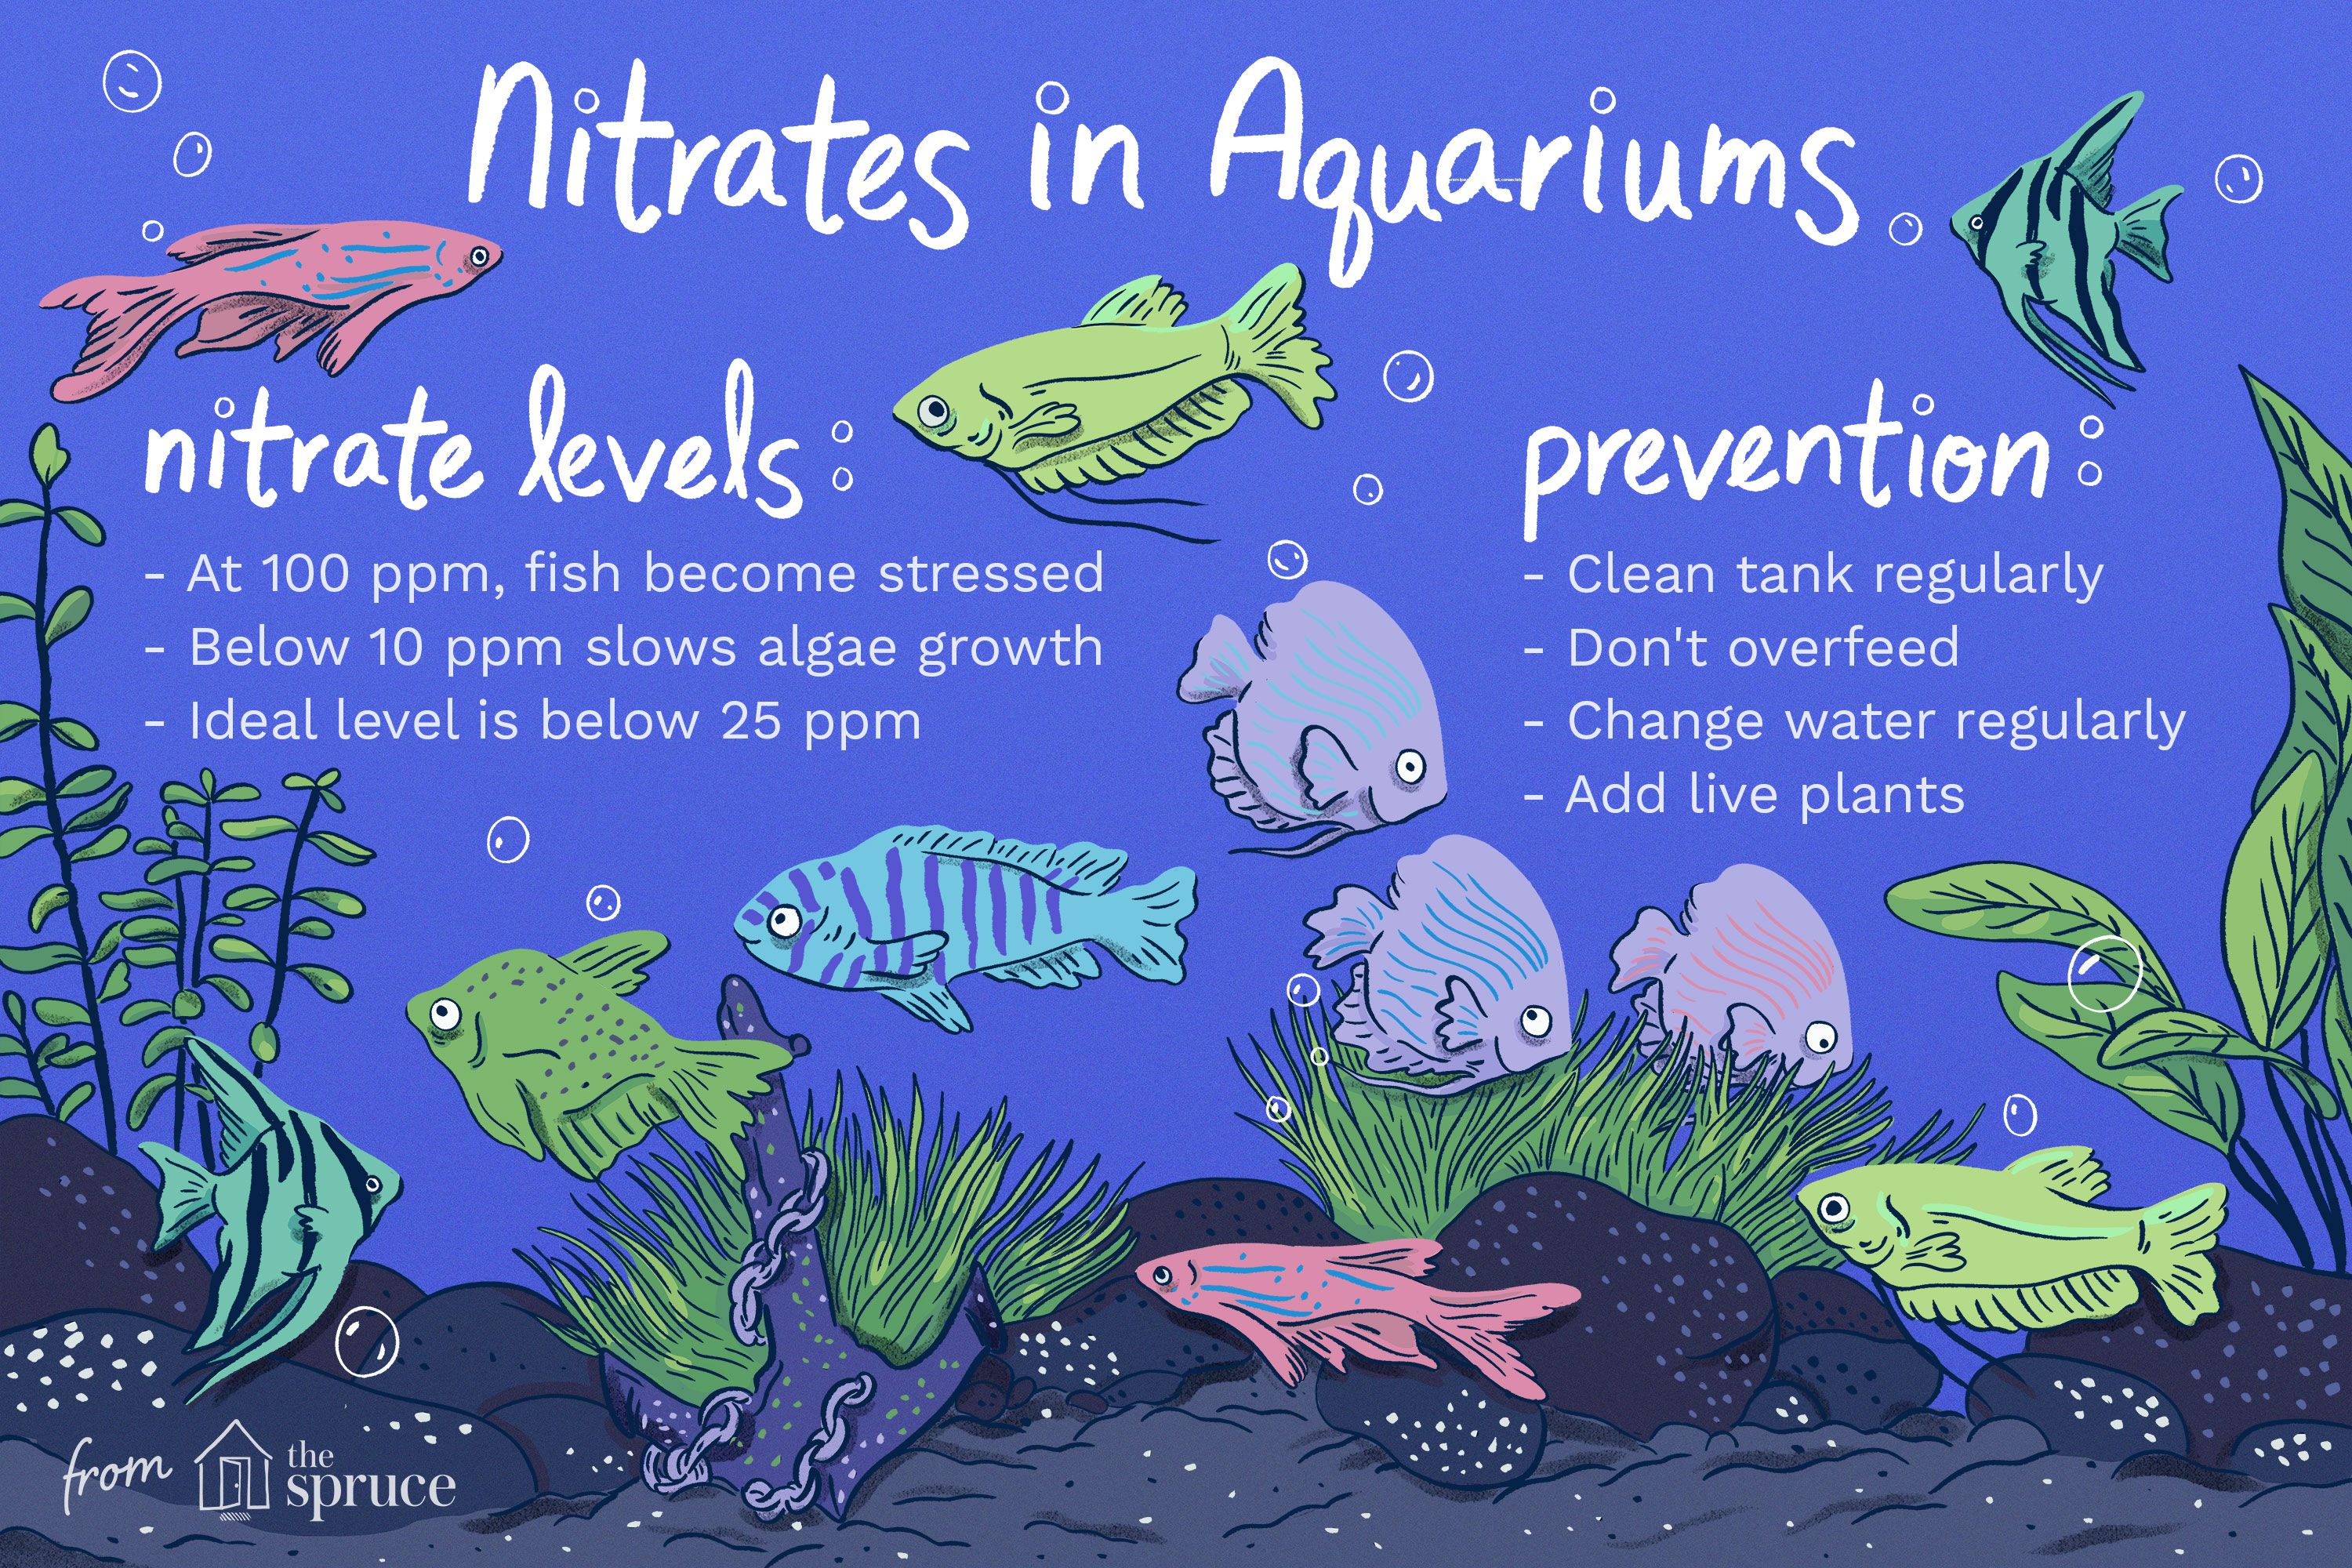 How to Raise Nitrates in Aquarium?